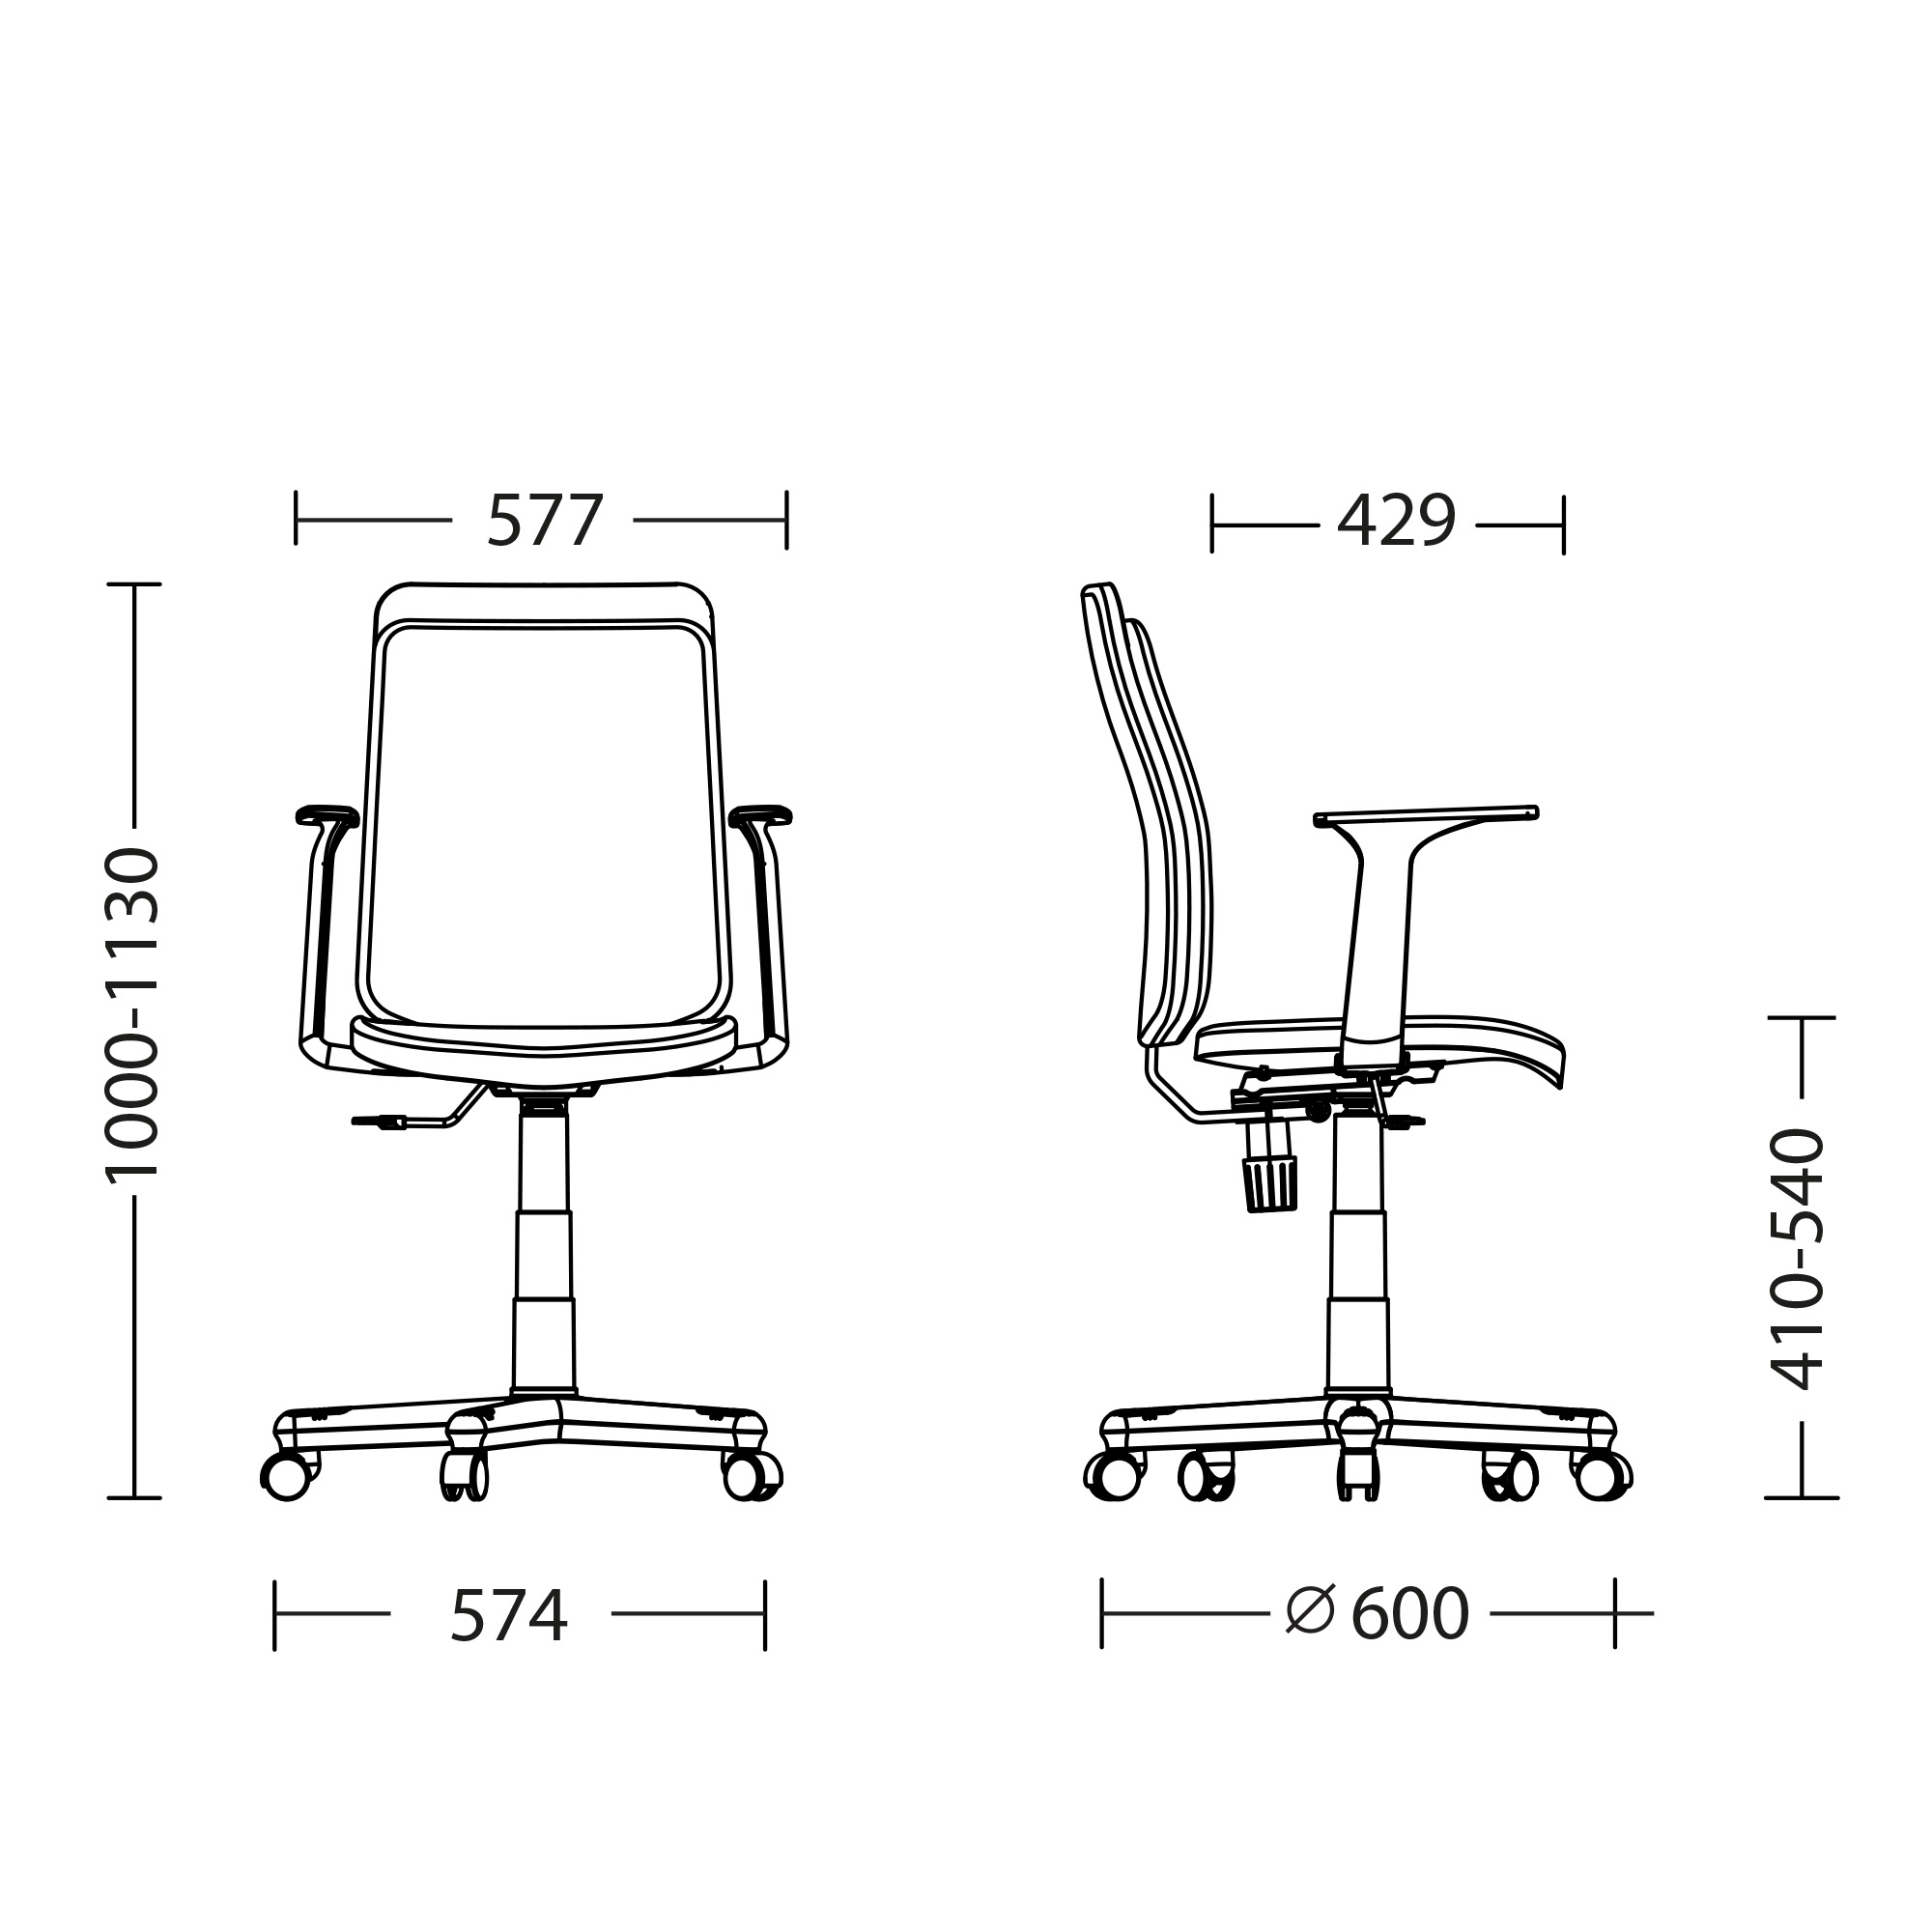 Кресла офисные высота спинки. Кресло Престиж габариты. Кресло Виктори новый стиль. Размер офисного кресла Престиж. Офисное кресло Размеры.